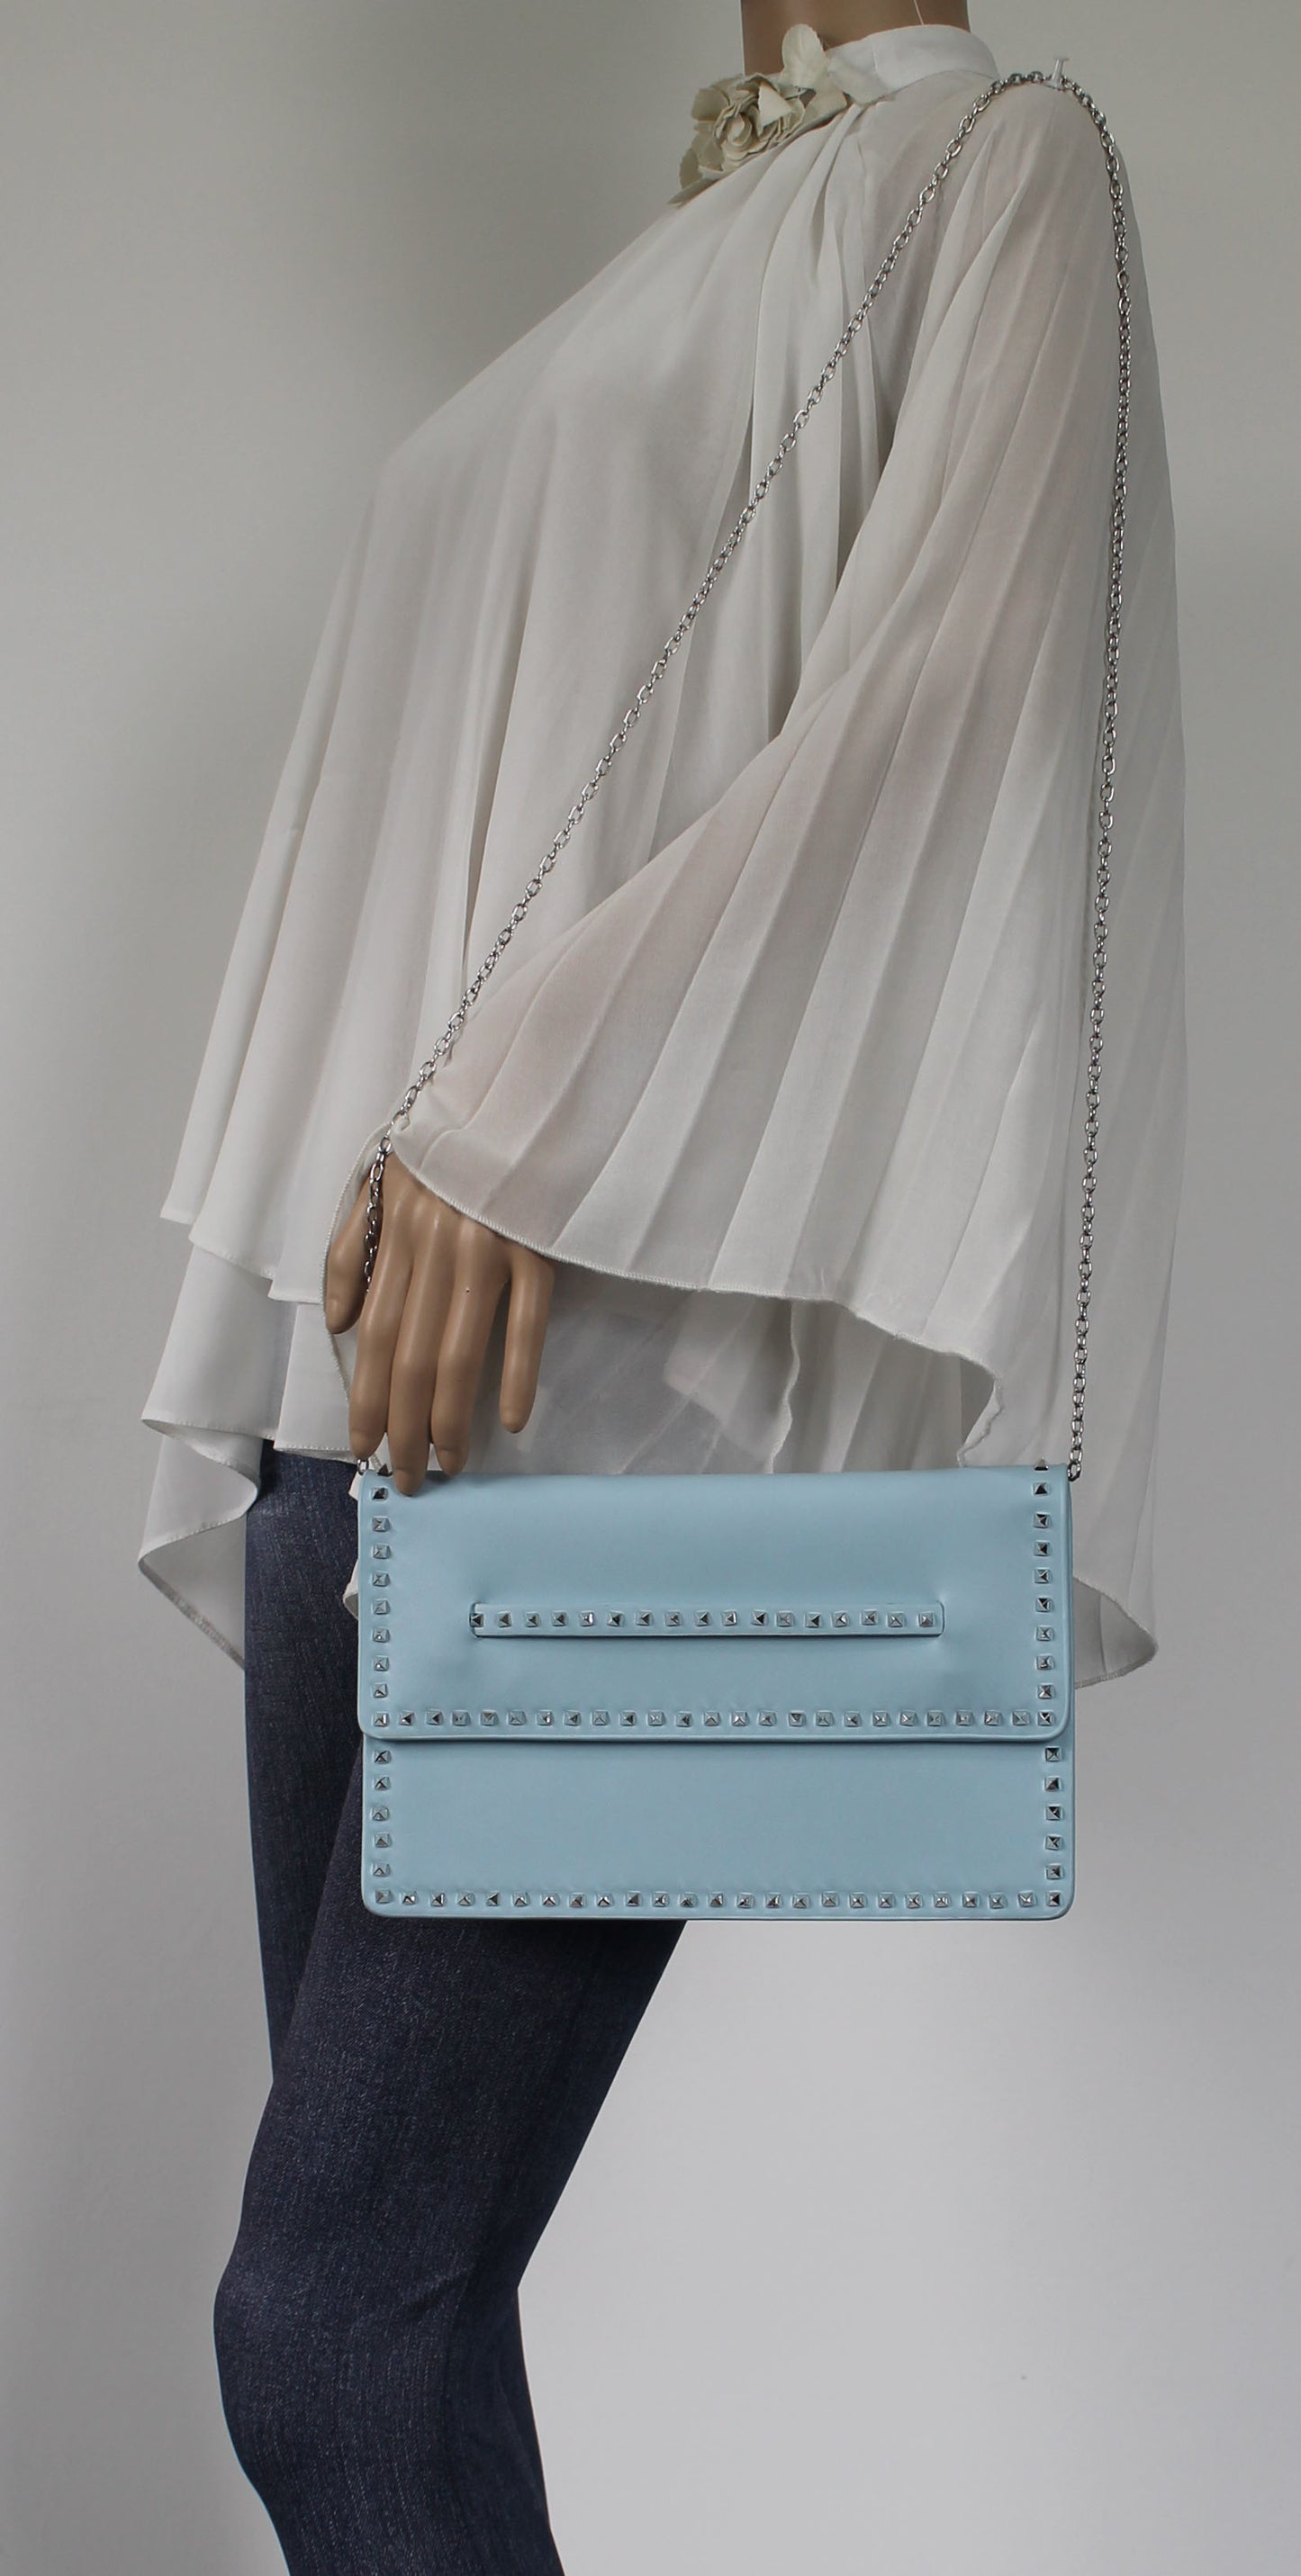 SWANKYSWANS Ciera Clutch Bag Serenity Blue Cute Cheap Clutch Bag For Weddings School and Work